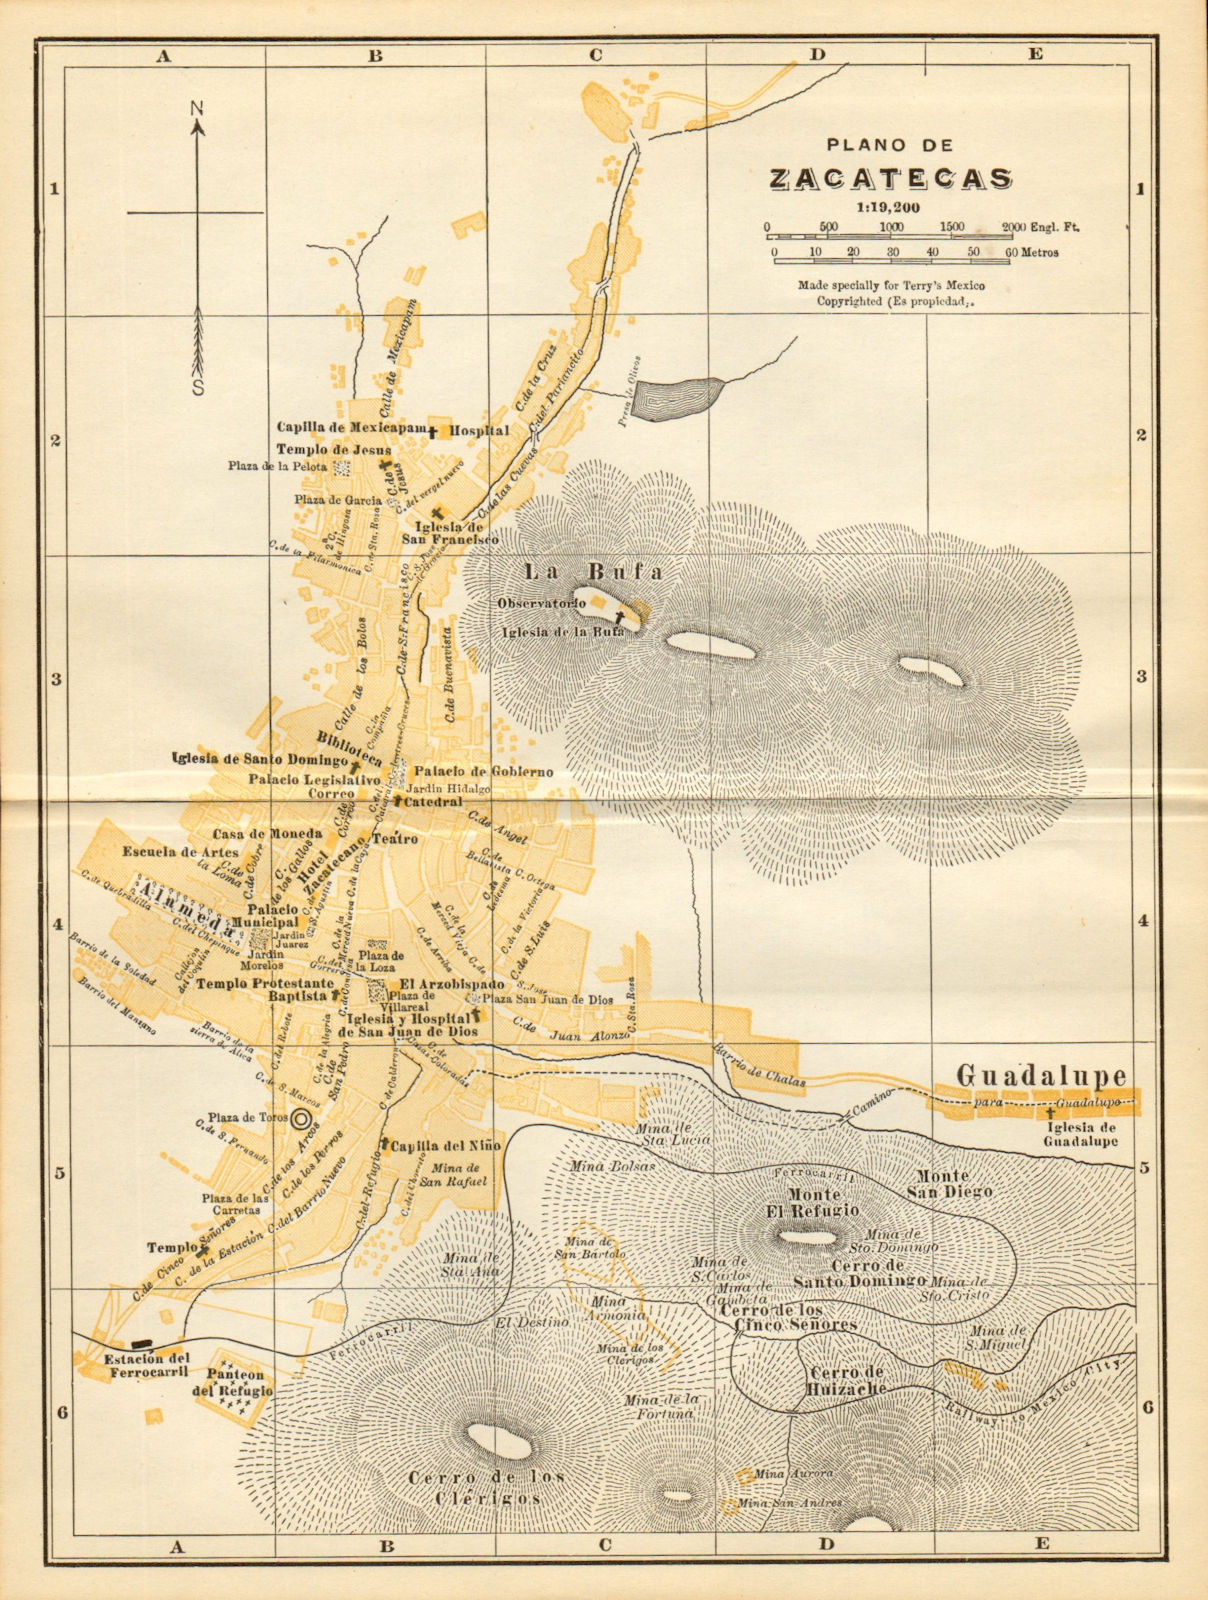 Plano de ZACATECAS, Mexico. Mapa de la ciudad. City/town plan 1935 old